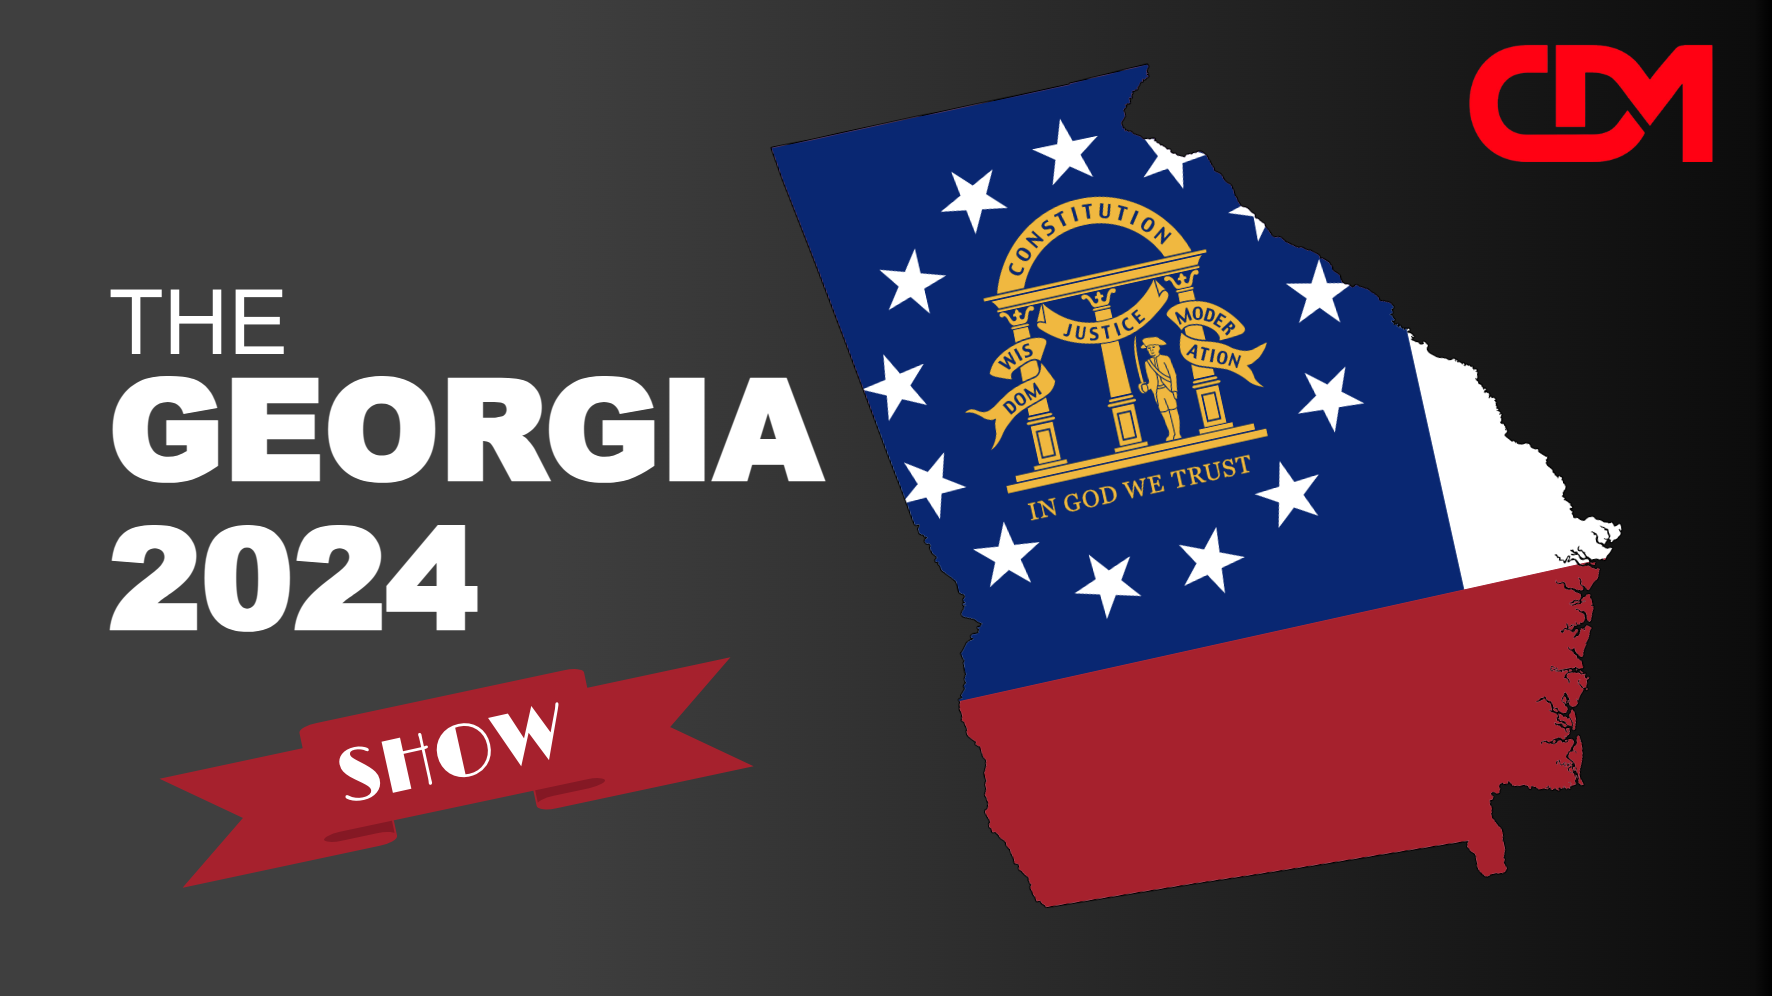 LIVE 7pm EST: The Georgia 2024 Show! Debbie Dooley, David Clements, Dr. James Thorpe